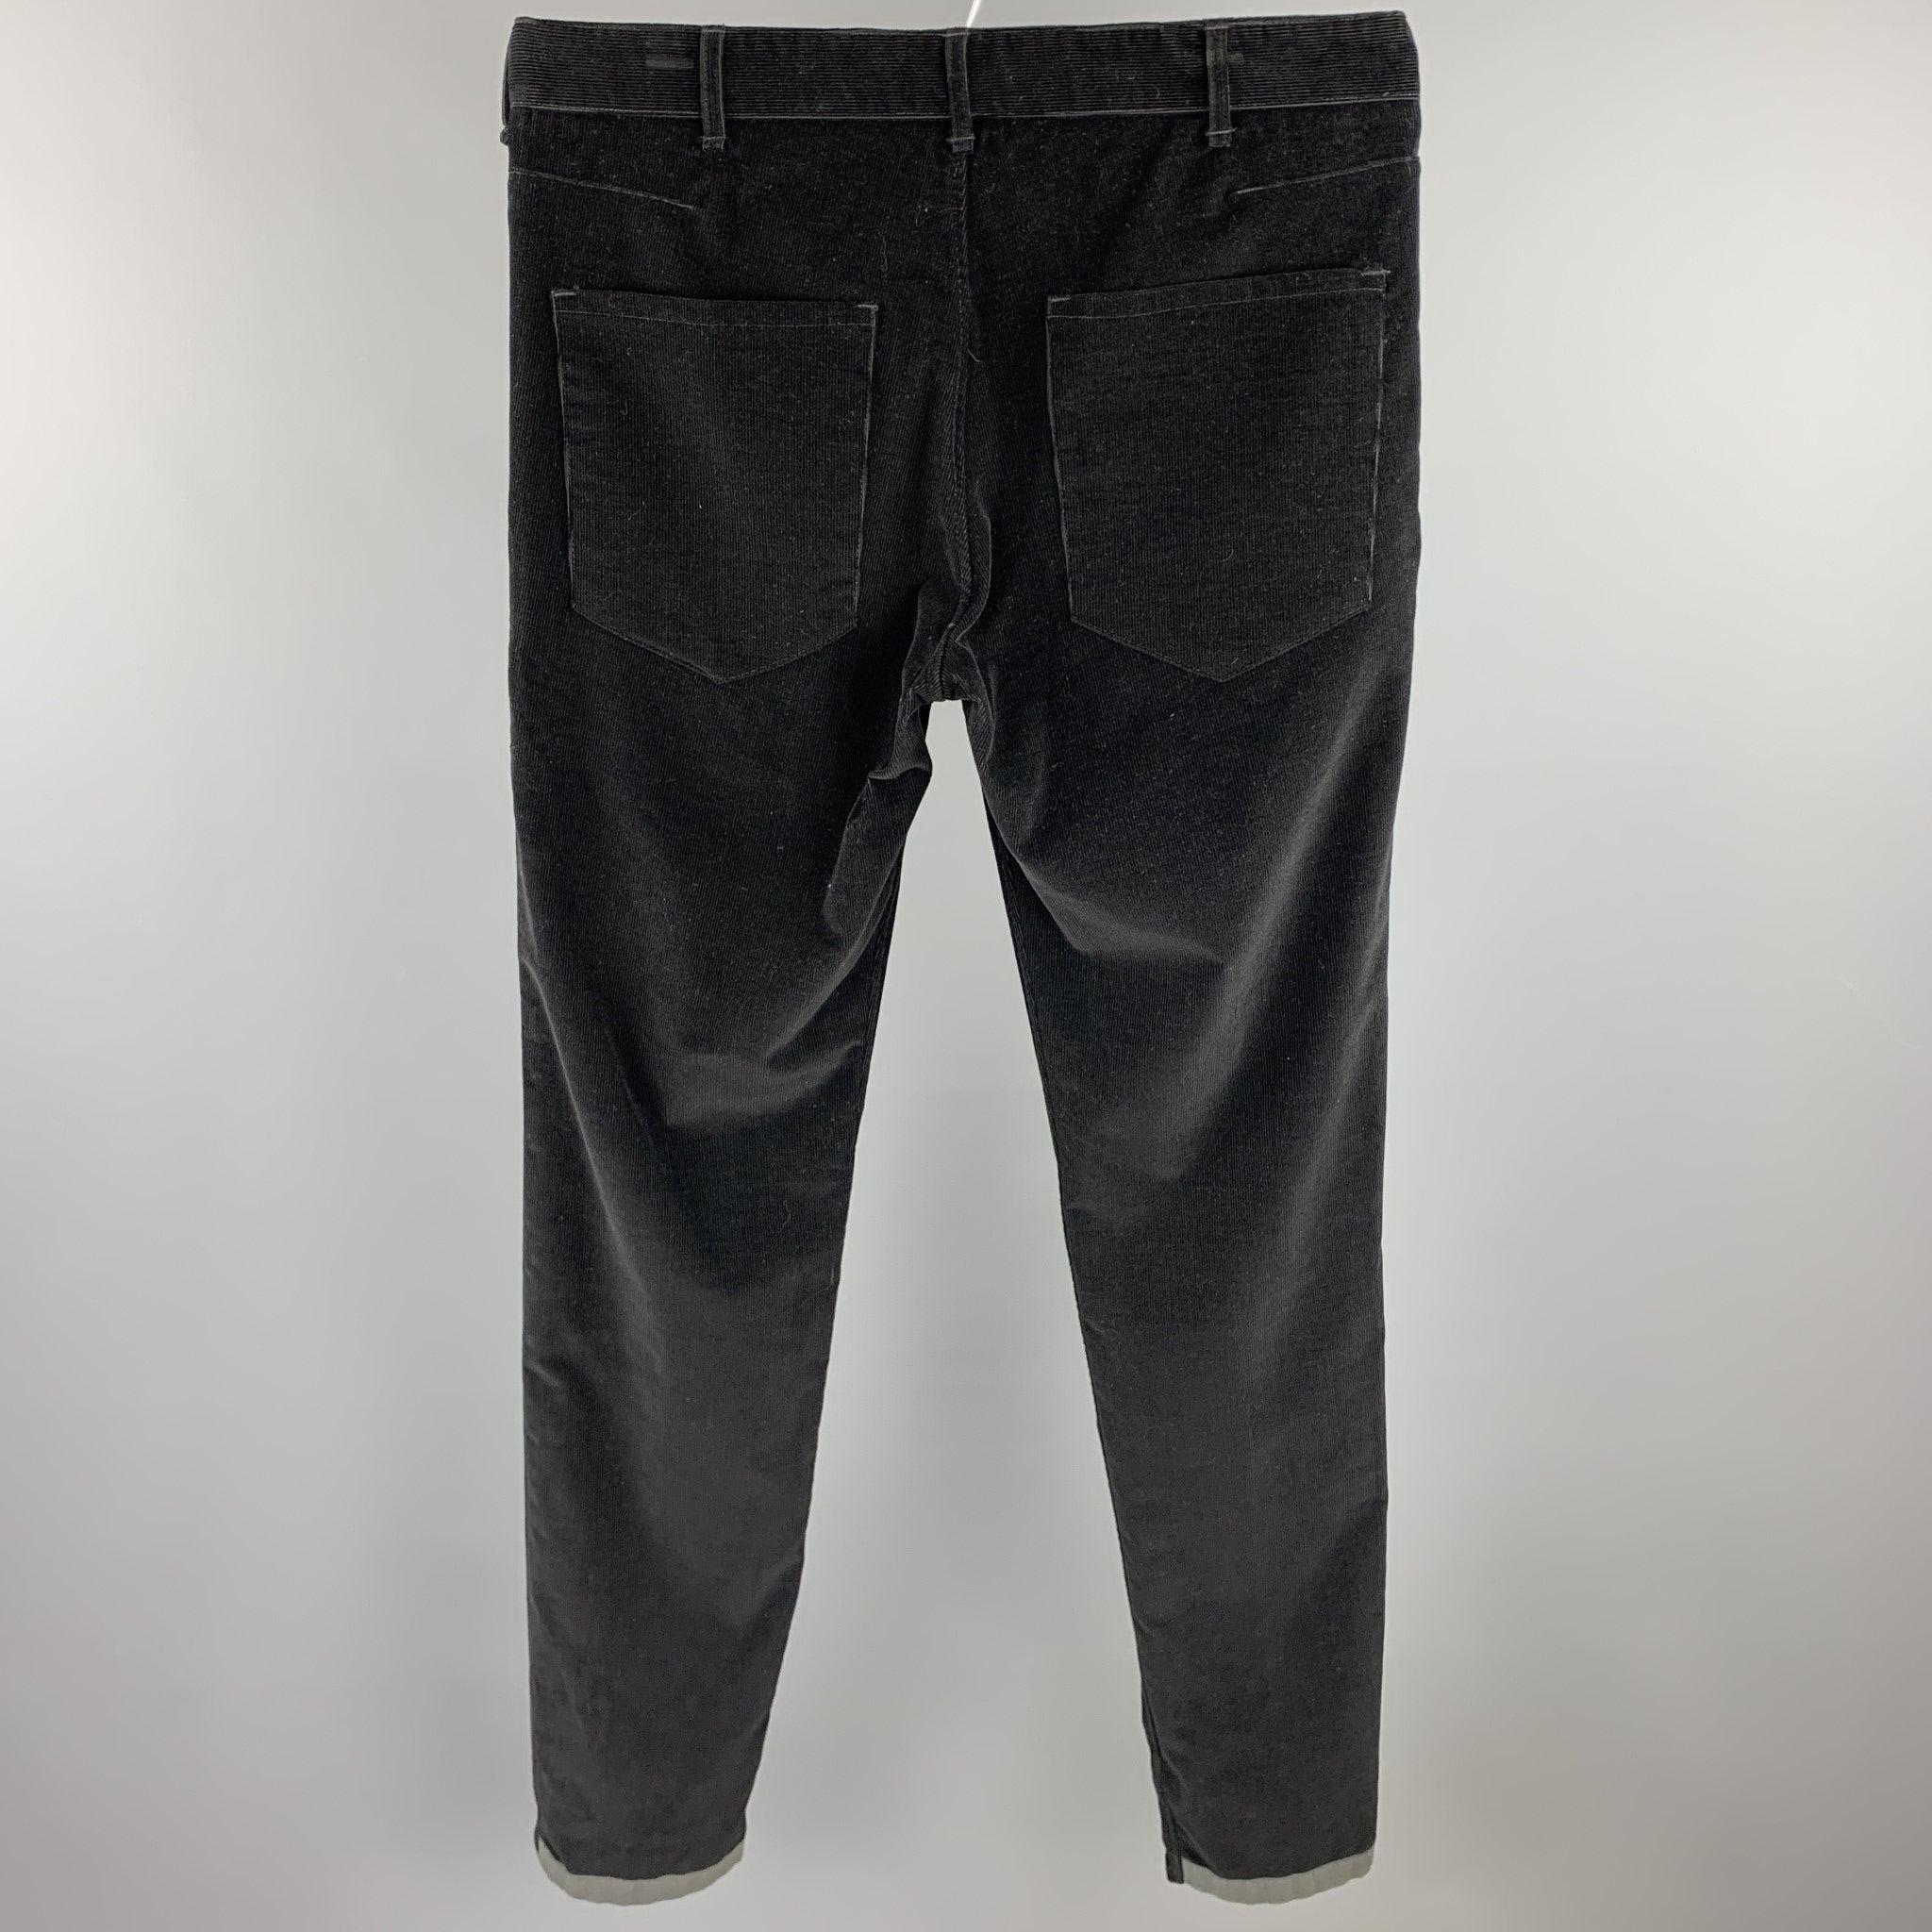 Le pantalon décontracté RAG & BONE se présente sous la forme d'un velours côtelé noir avec une bordure grise, avec une coupe ajustée et une fermeture à la braguette.
Etat d'occasion. 

Marqué :   32 

Mesures : 
  Taille : 32 pouces 
Hauteur : 9,5